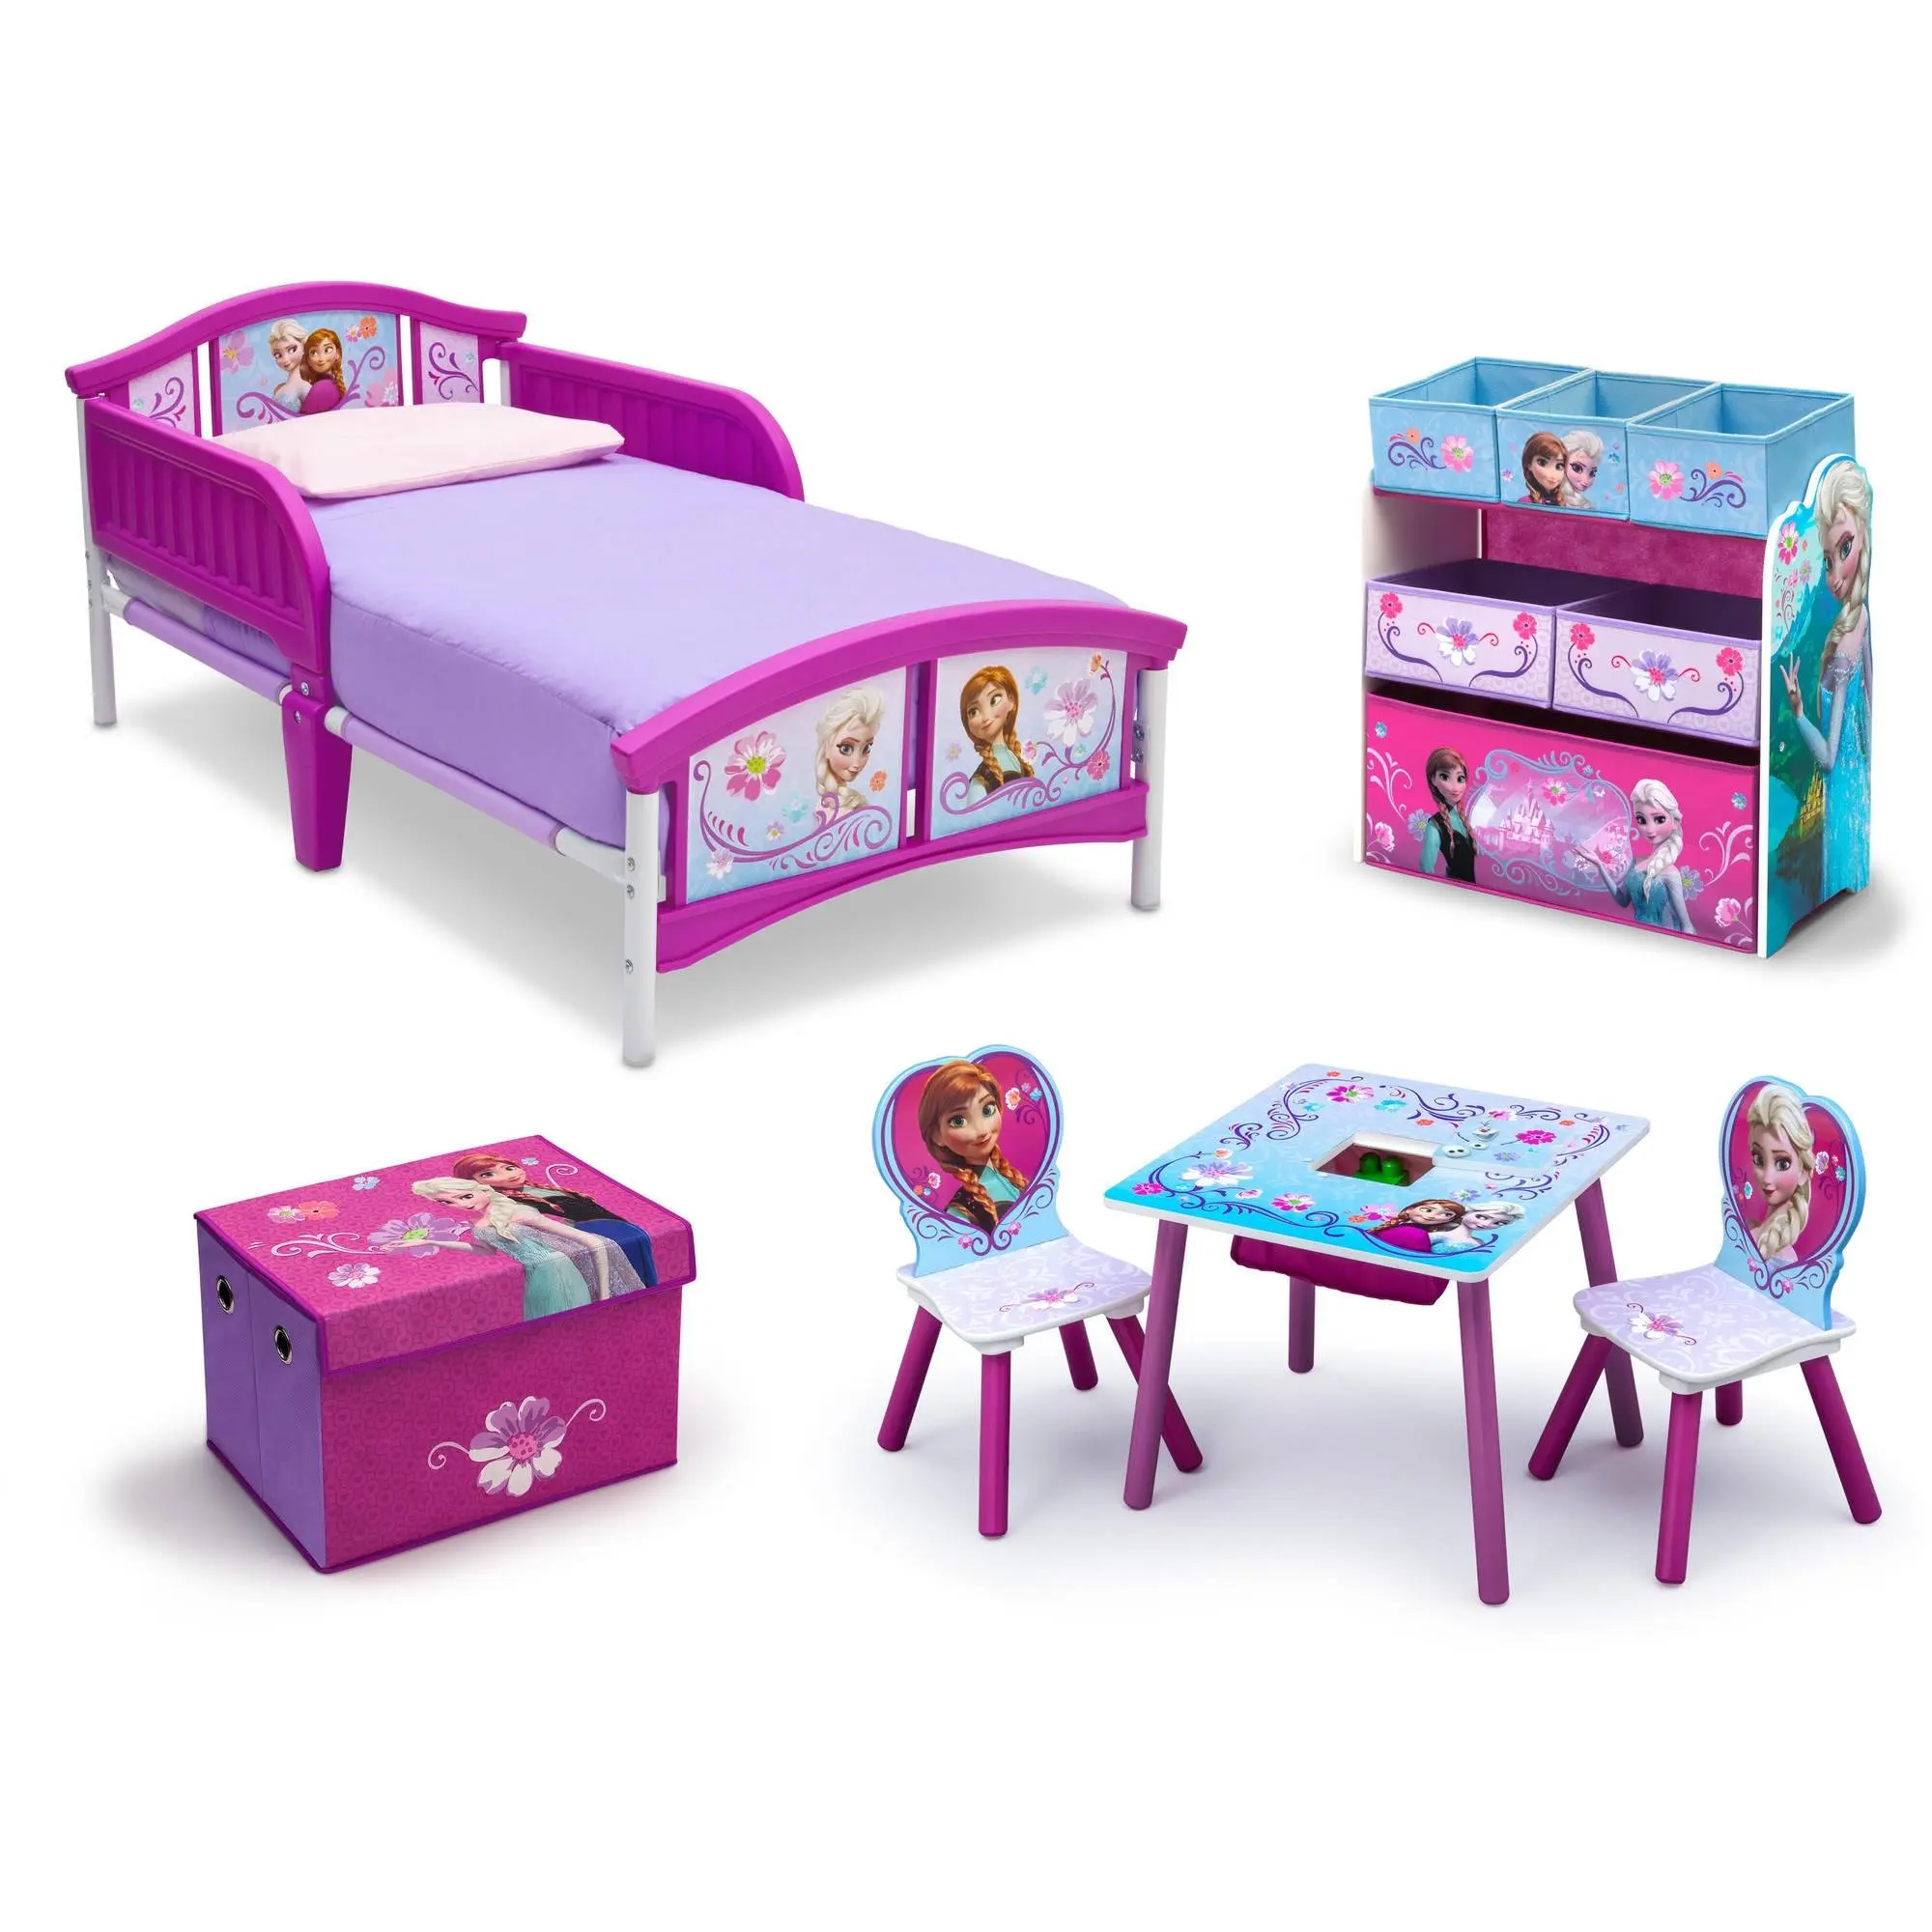 Buy Frozen Bedroom Decor Toddler Kids Bed Disney Frozen